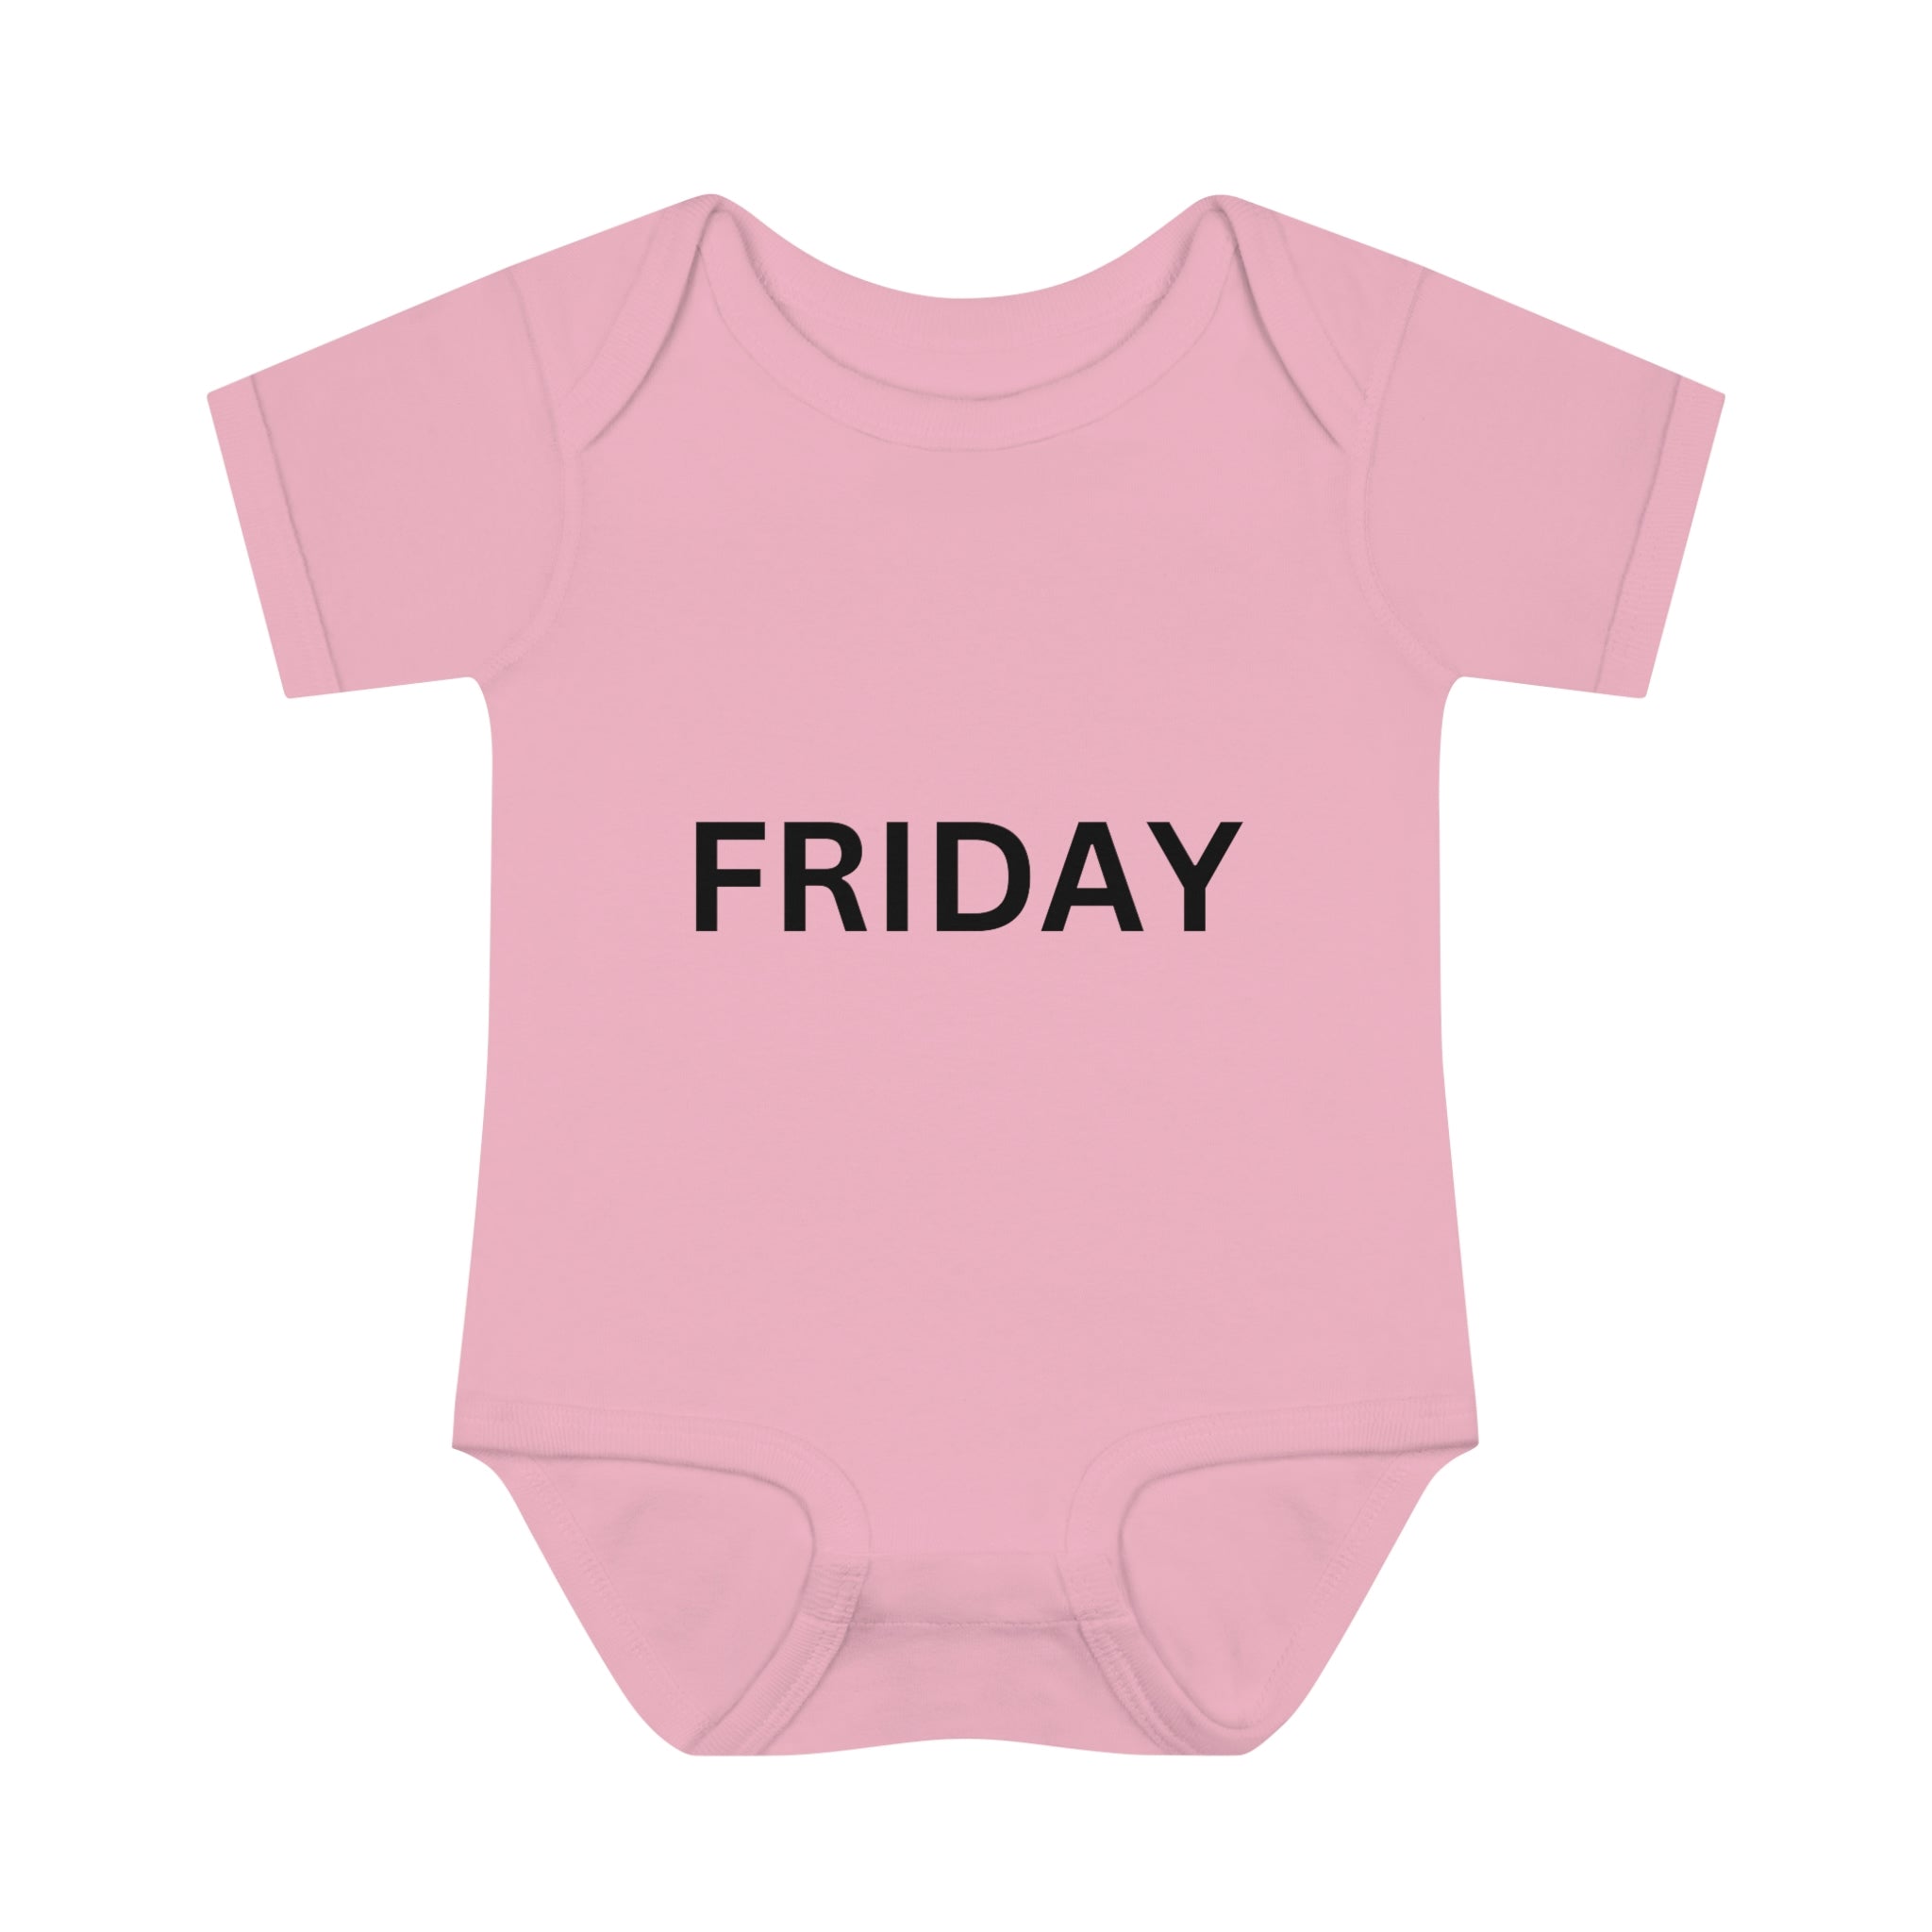 Friday Baby Bodysuit